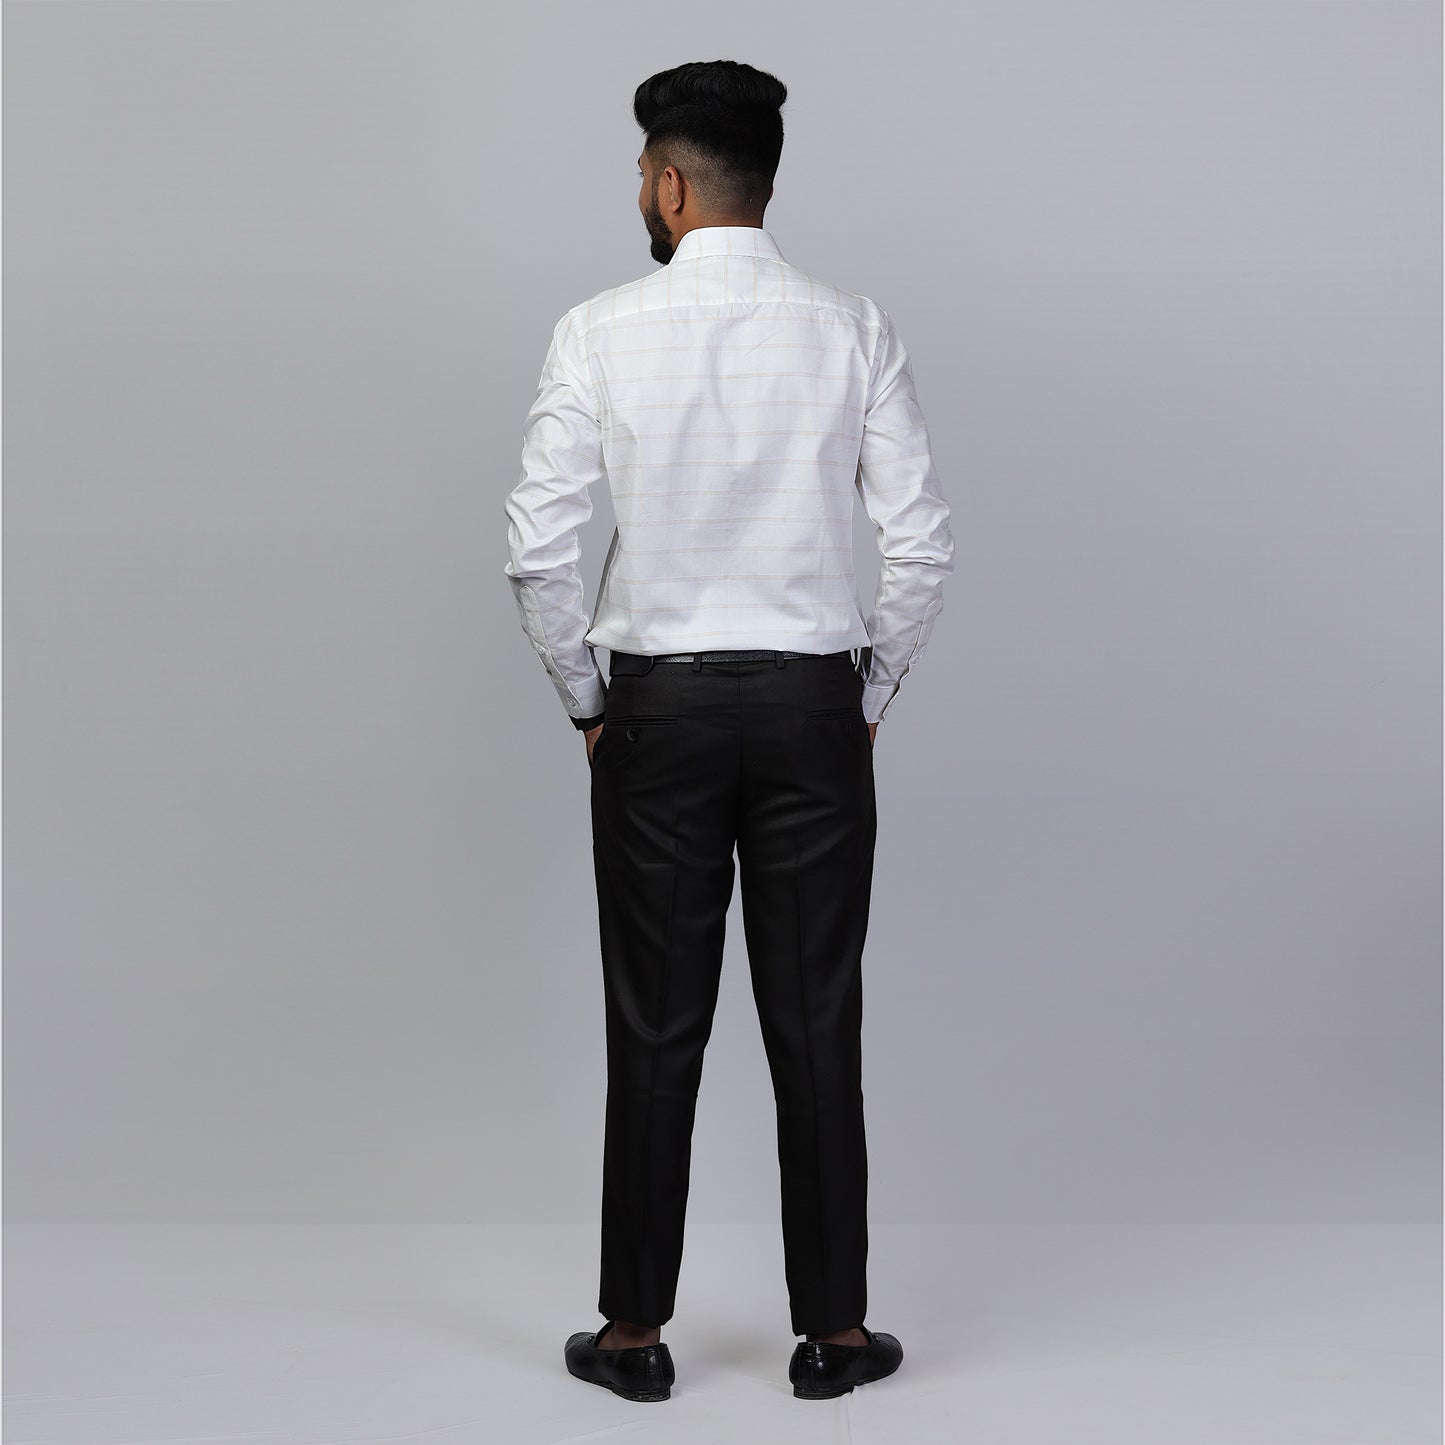 KNS 278 - White Checks Shirt